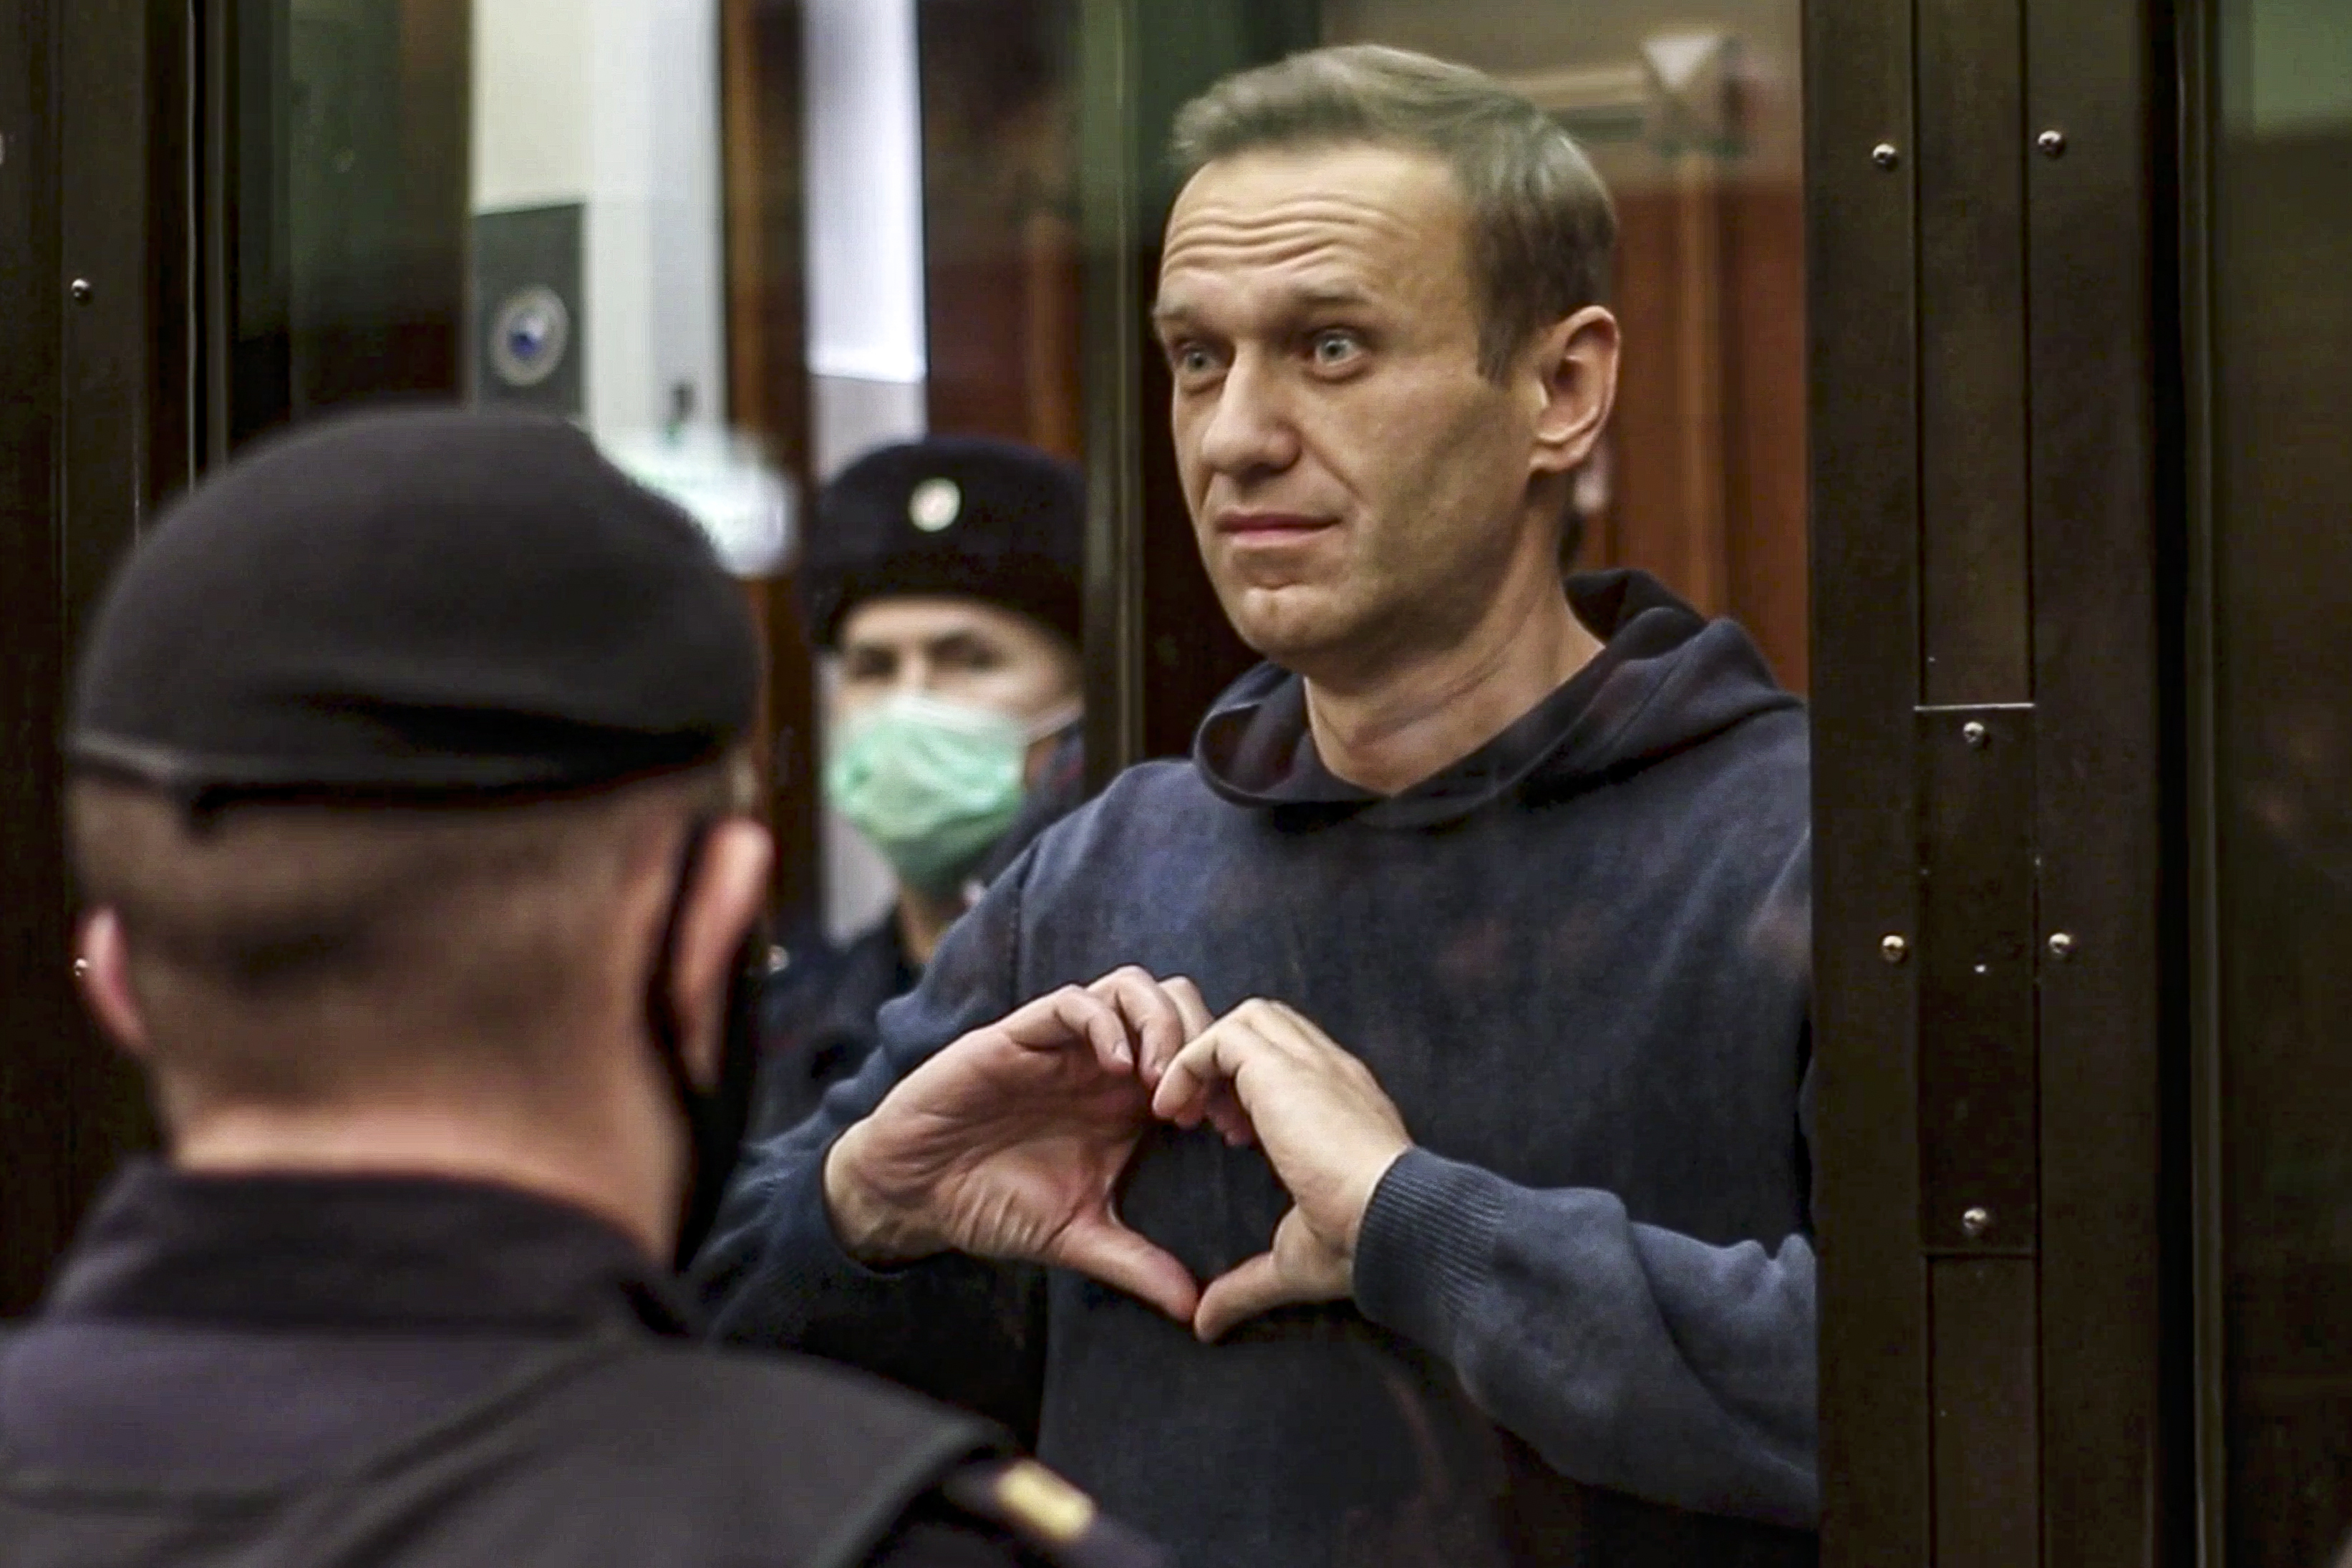 Der Kremlkritiker Alexej Nawalny wurde angeblich durch einen Chemieangriff vergiftet, der seiner Meinung nach von Russland verursacht wurde